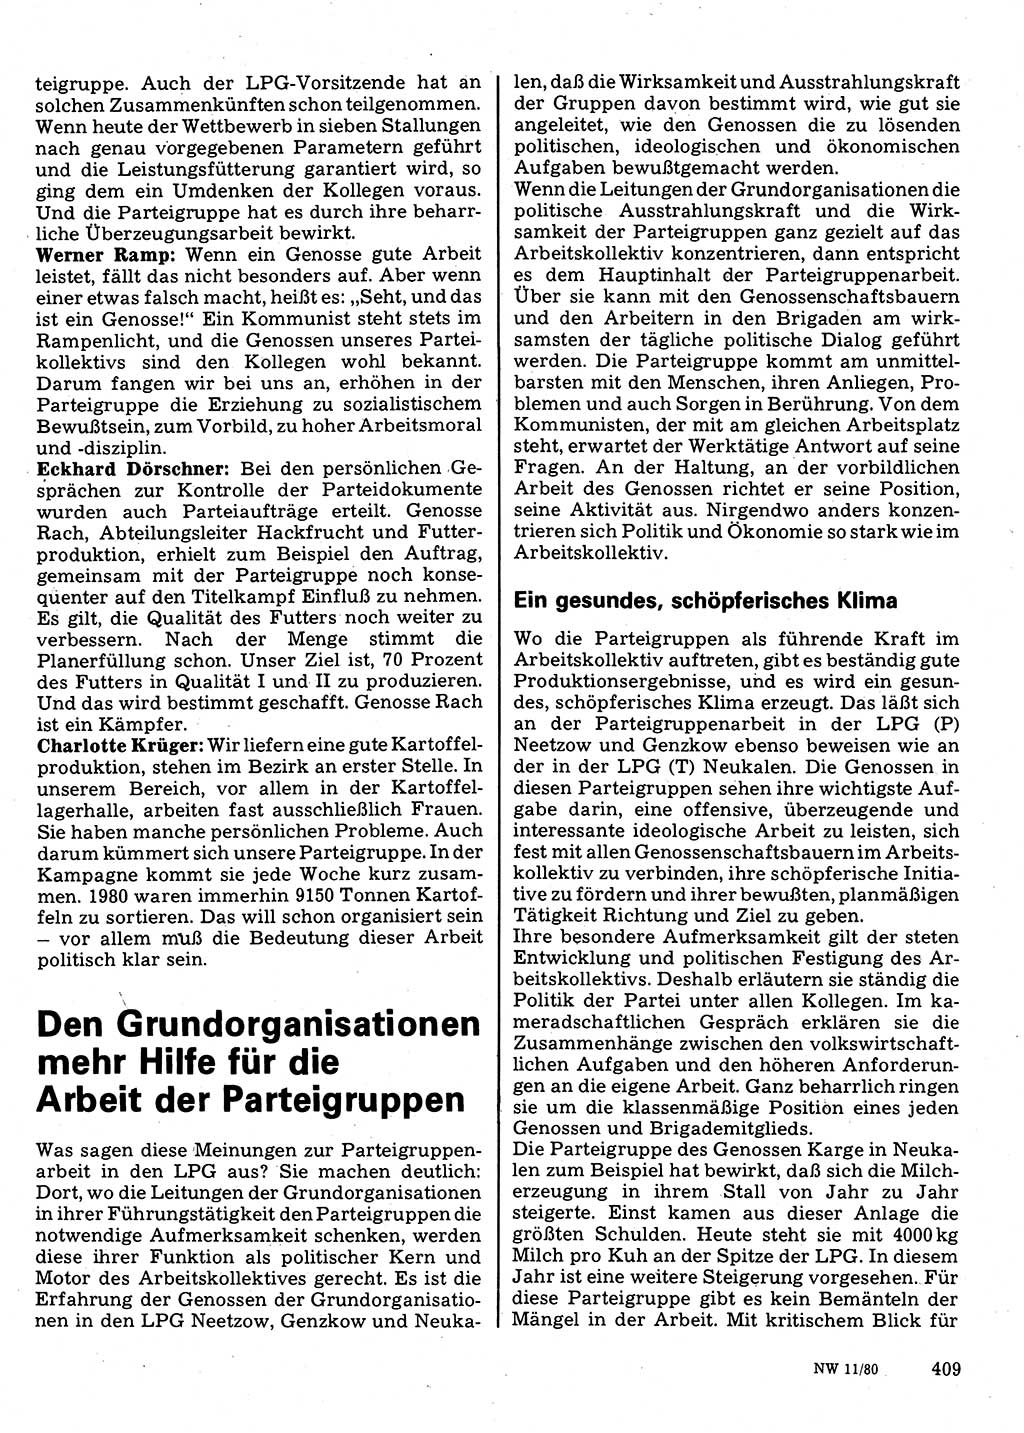 Neuer Weg (NW), Organ des Zentralkomitees (ZK) der SED (Sozialistische Einheitspartei Deutschlands) für Fragen des Parteilebens, 35. Jahrgang [Deutsche Demokratische Republik (DDR)] 1980, Seite 409 (NW ZK SED DDR 1980, S. 409)